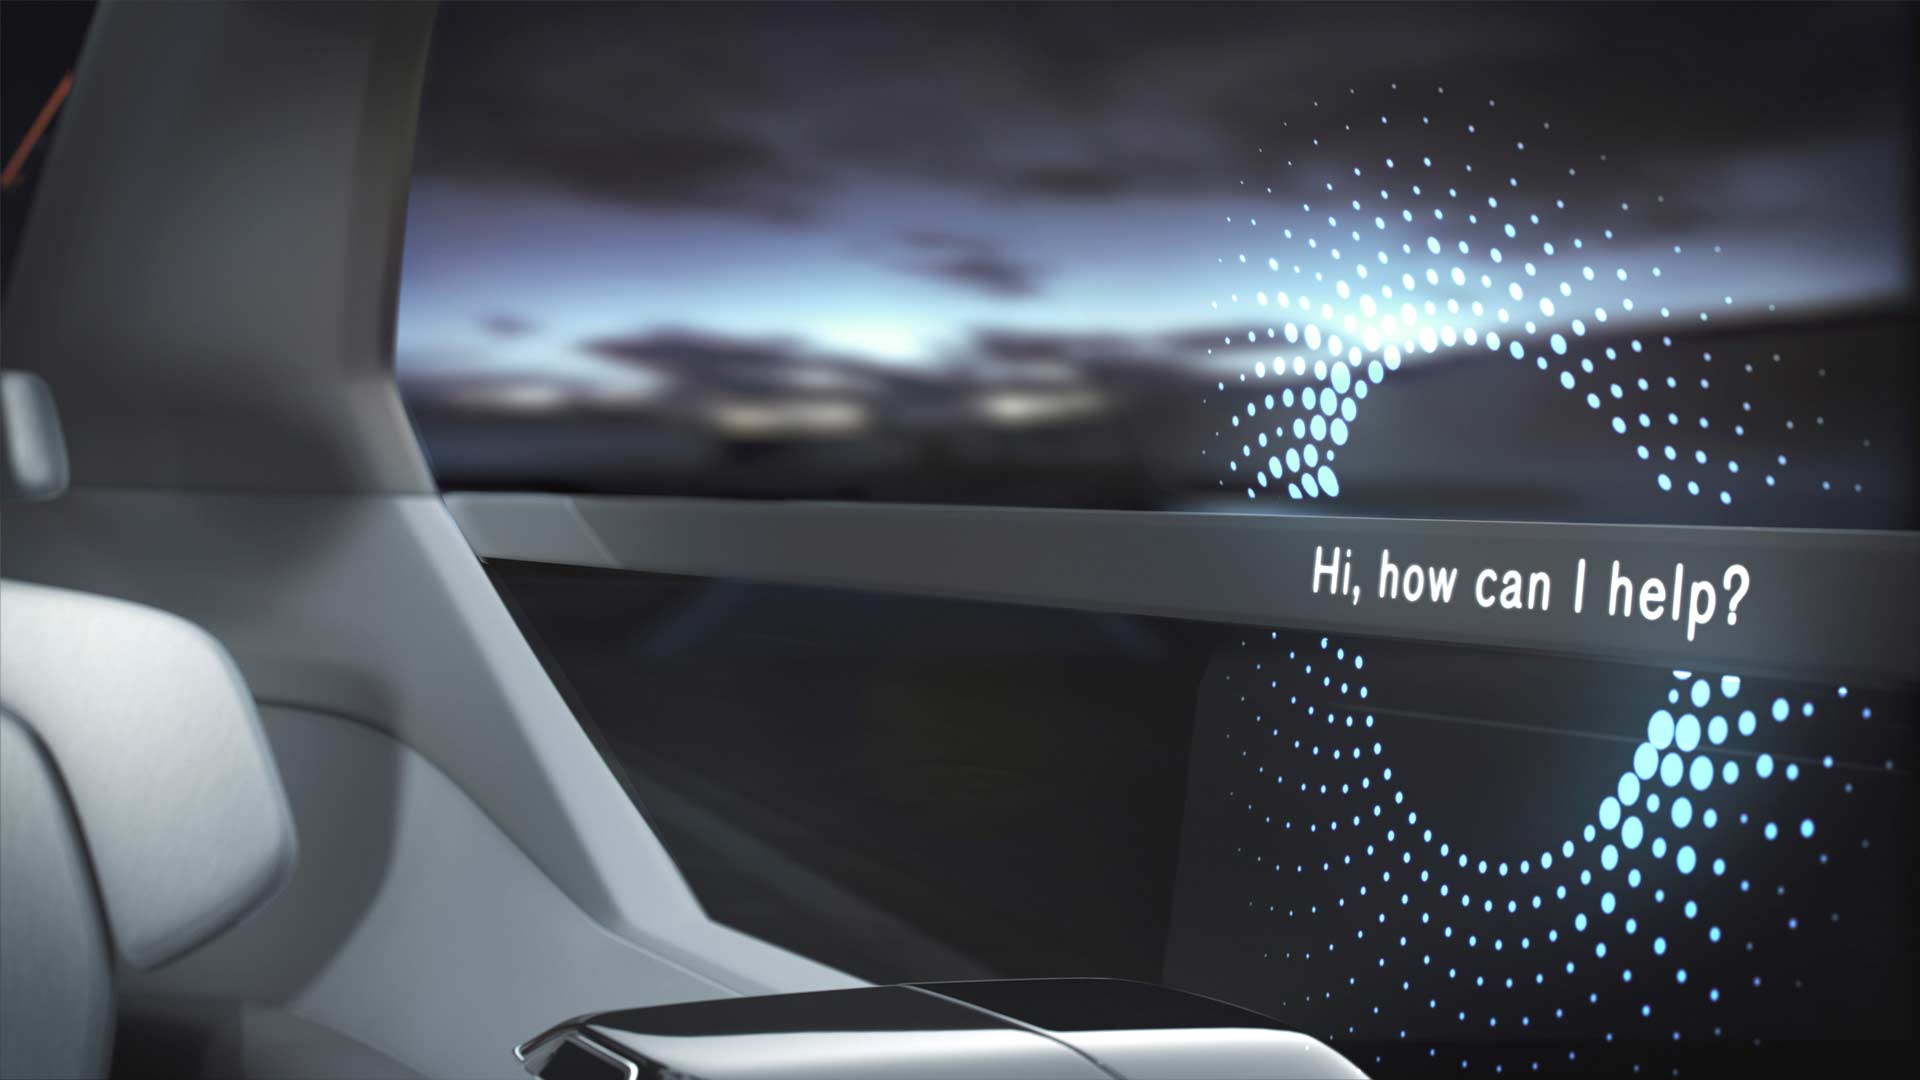 Volvo-360c-autonomous-concept-interior_3